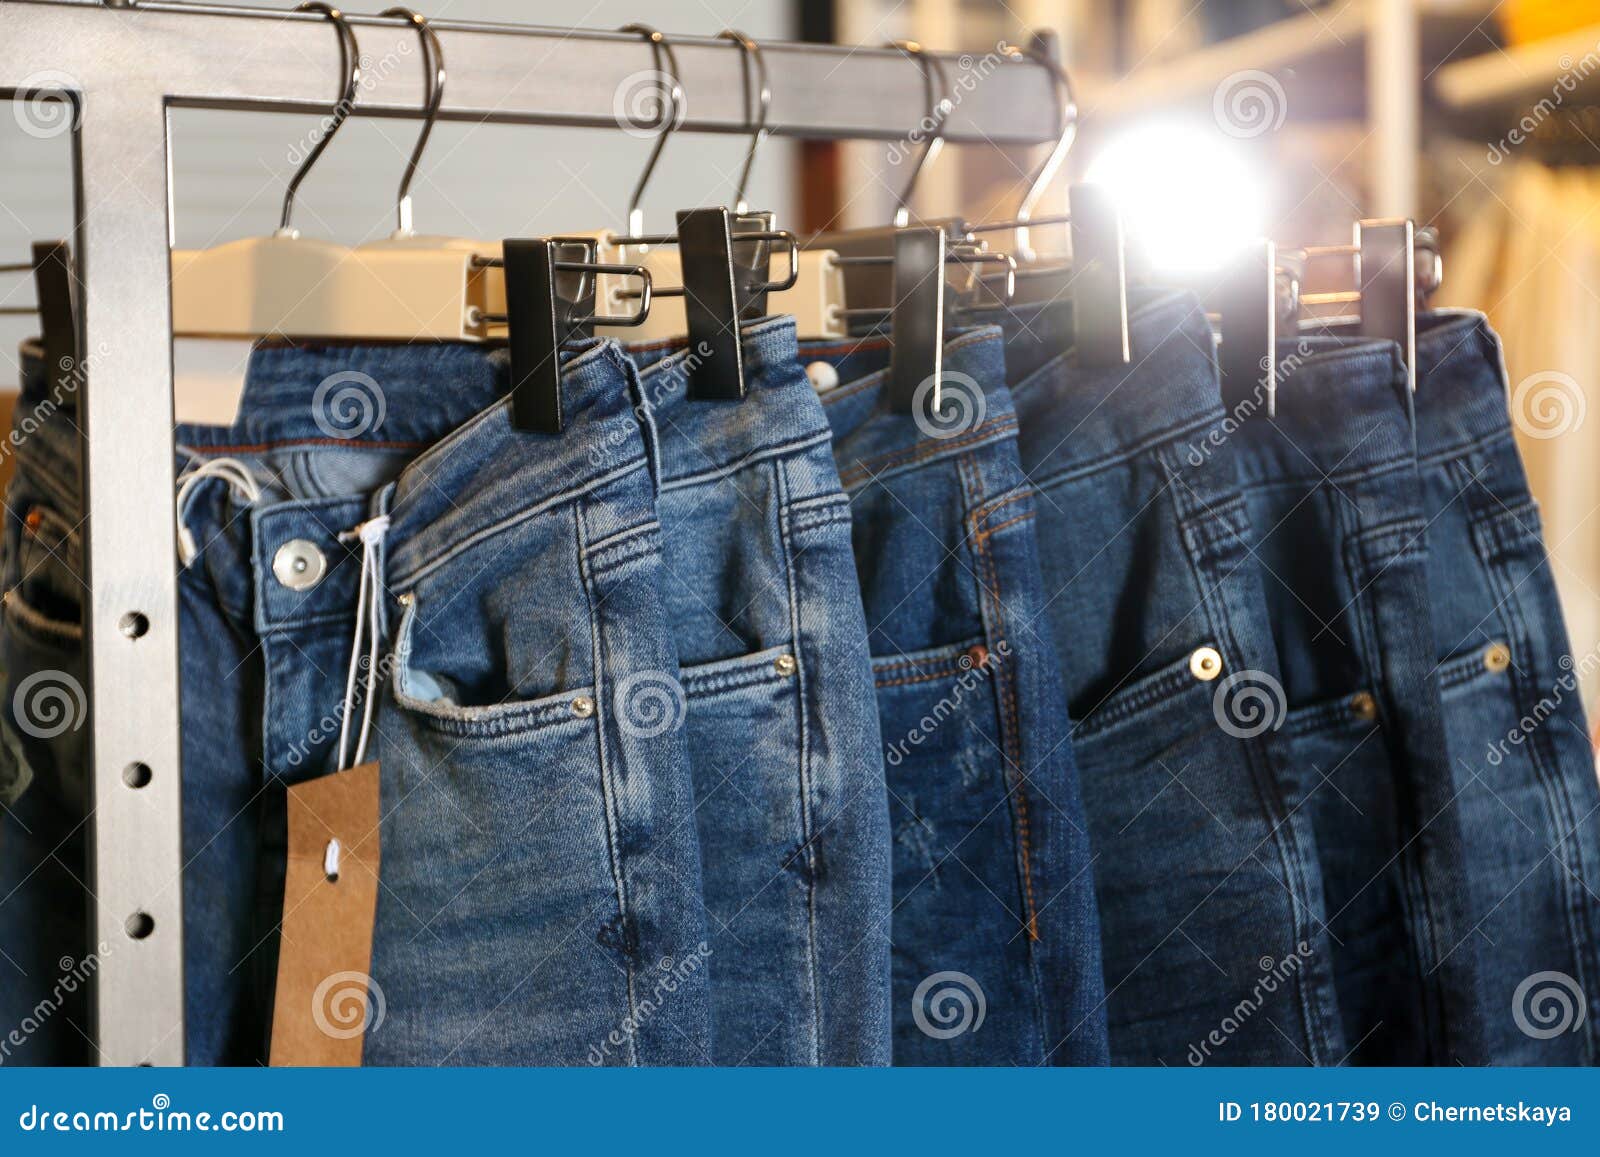 Pantalones Vaqueros Modernos Colgando En Tendedero En La Tienda Imagen de archivo - Imagen de hermoso, fila: 180021739